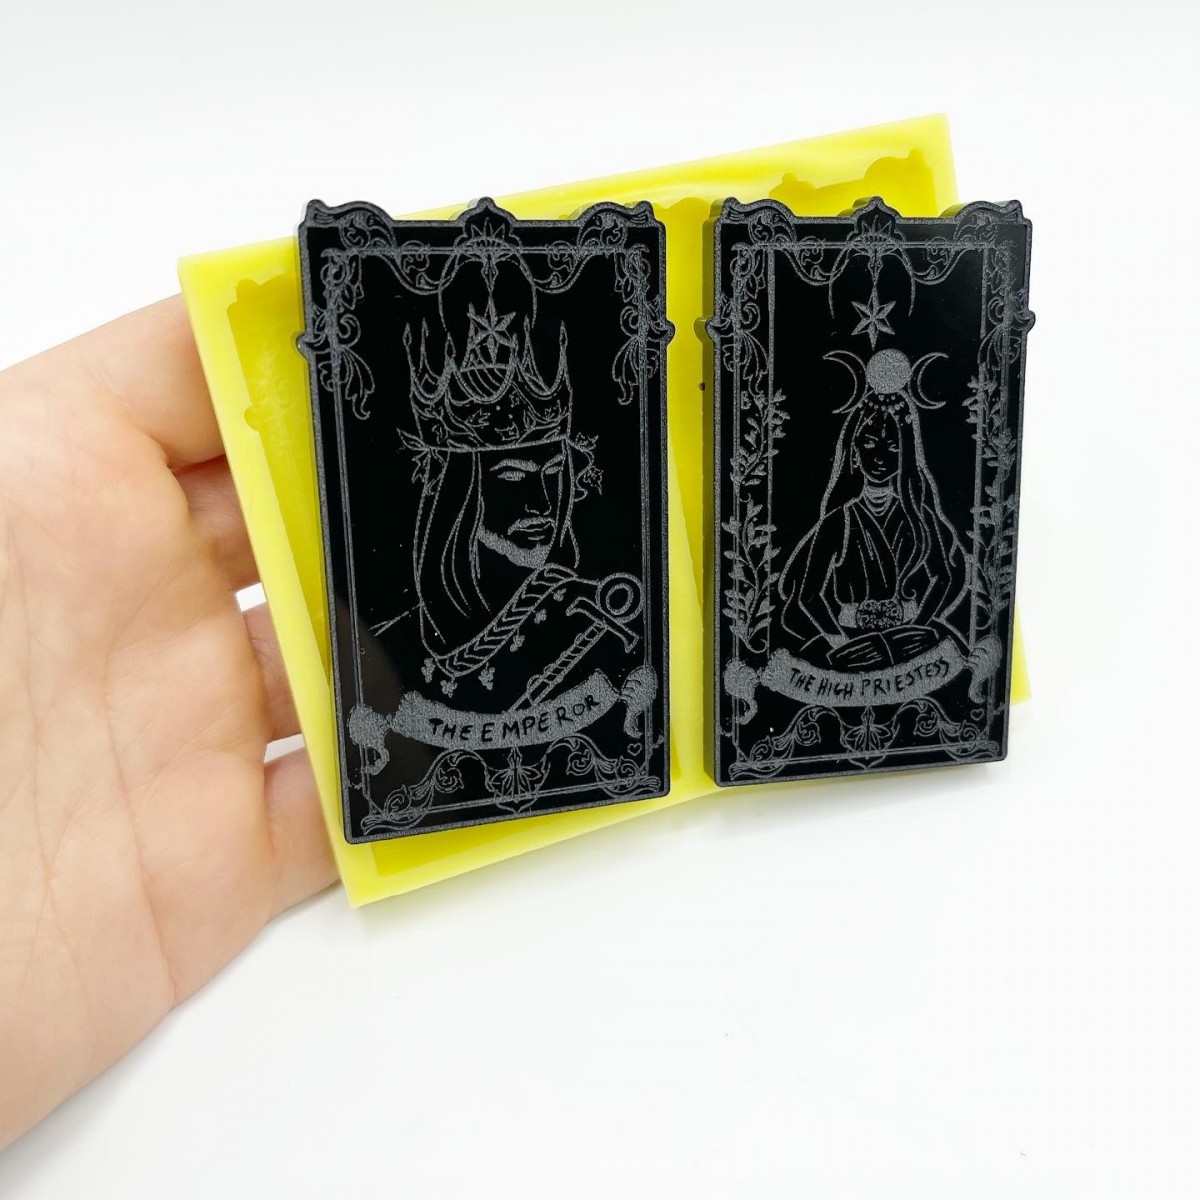 Set Carte dei Tarocchi "The Emperor" e "The High Priestess" Mold - medie dimensioni